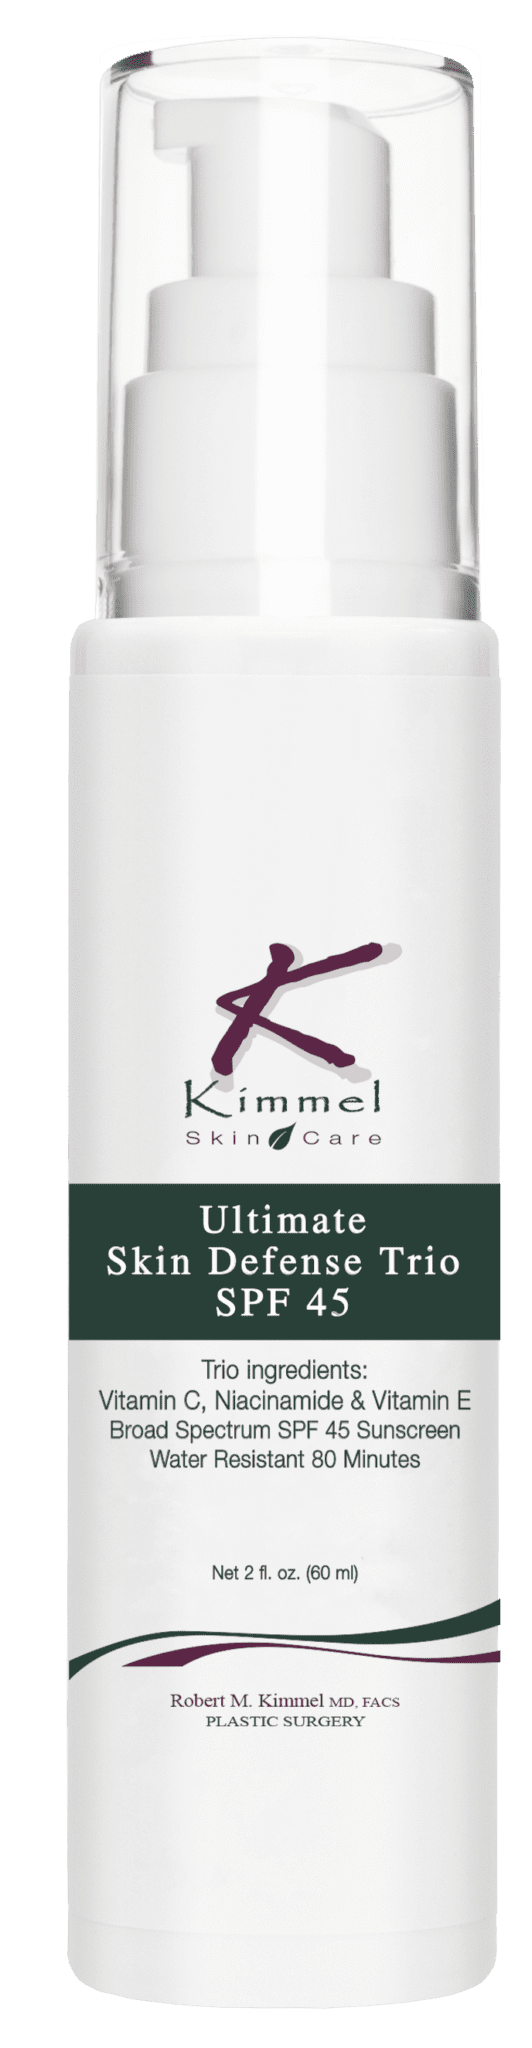 Ultimate Skin Defense Trio SPF 45